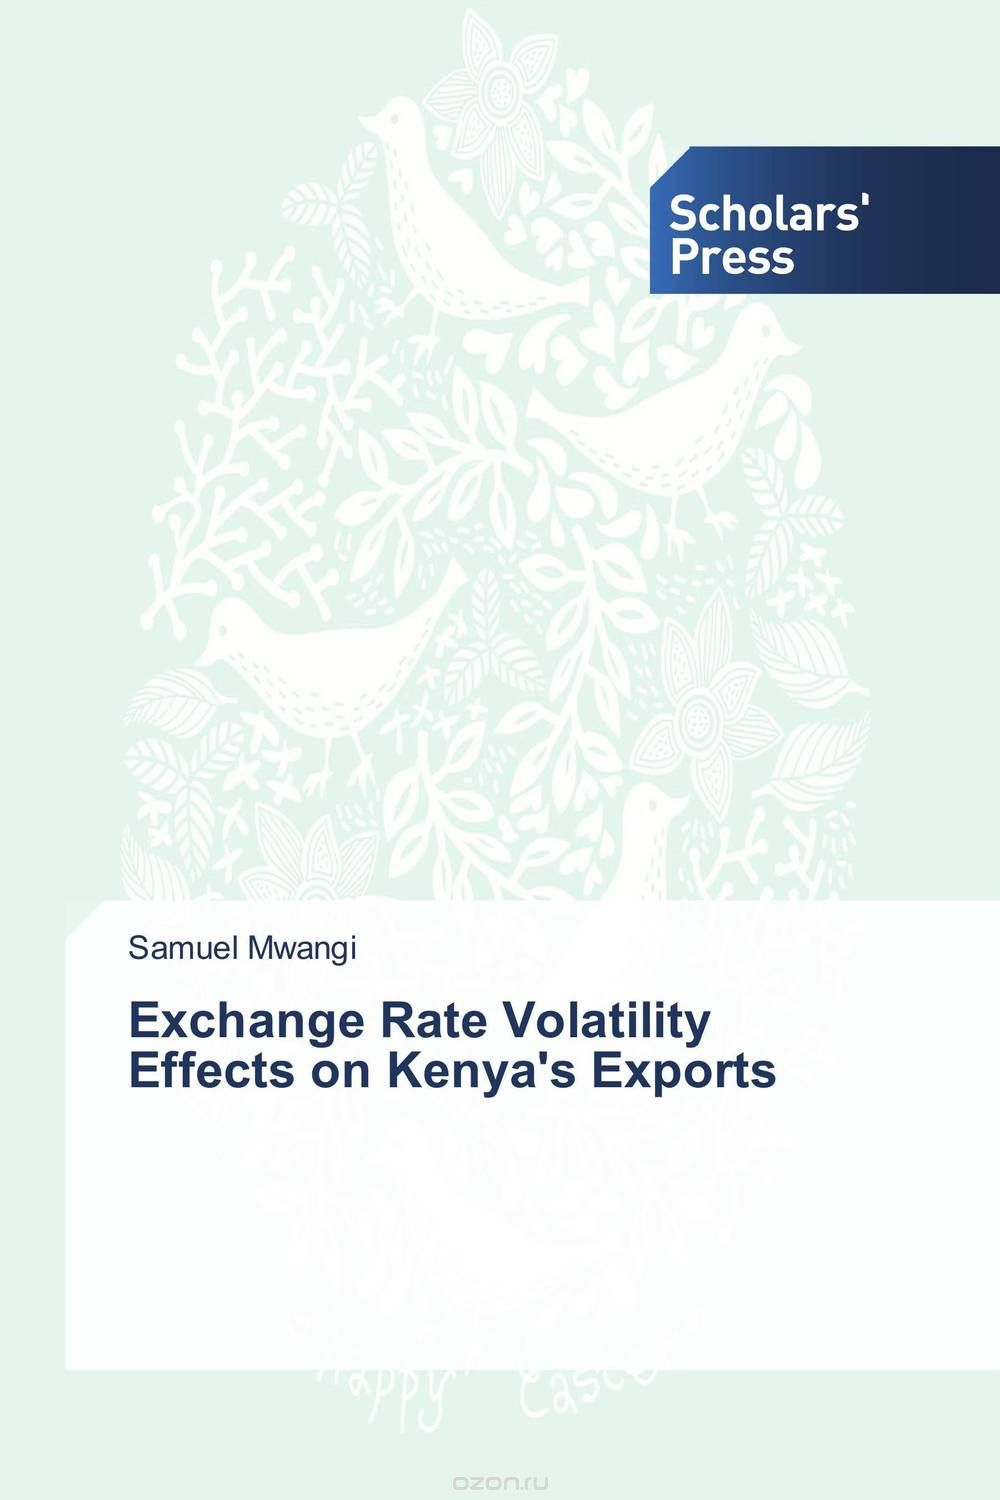 Скачать книгу "Exchange Rate Volatility Effects on Kenya's Exports"